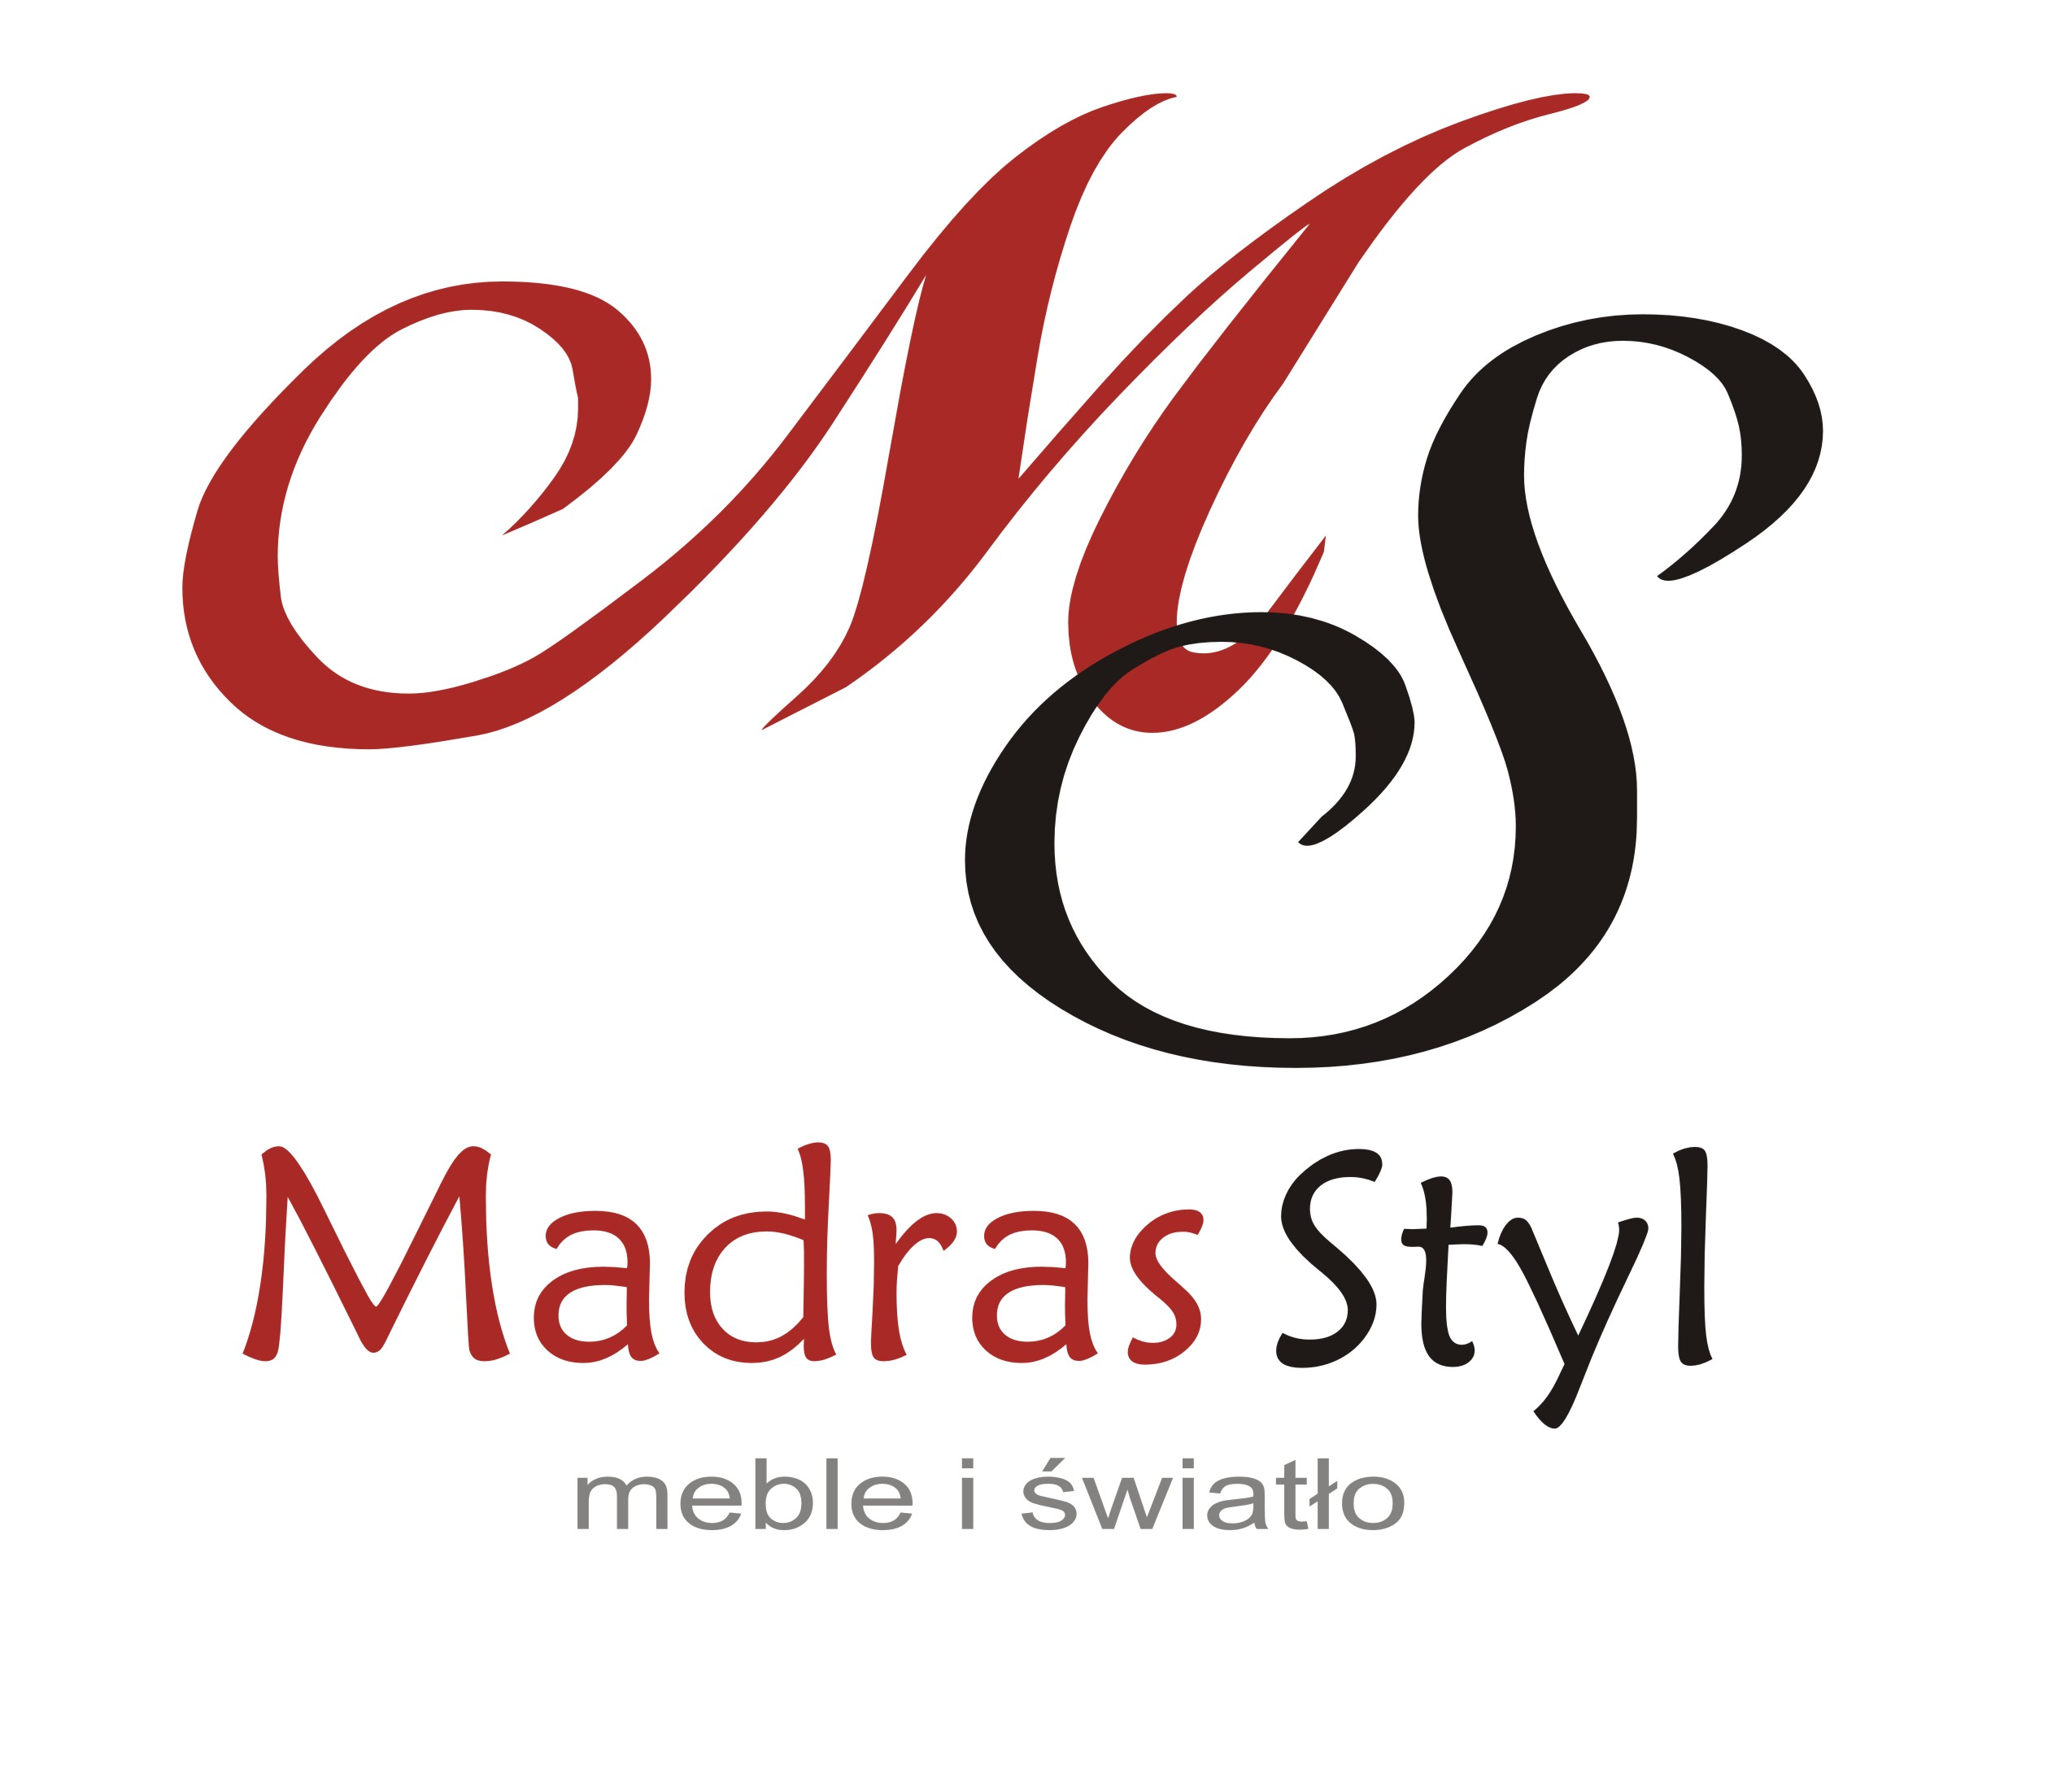 Madras Styl - meble i światło